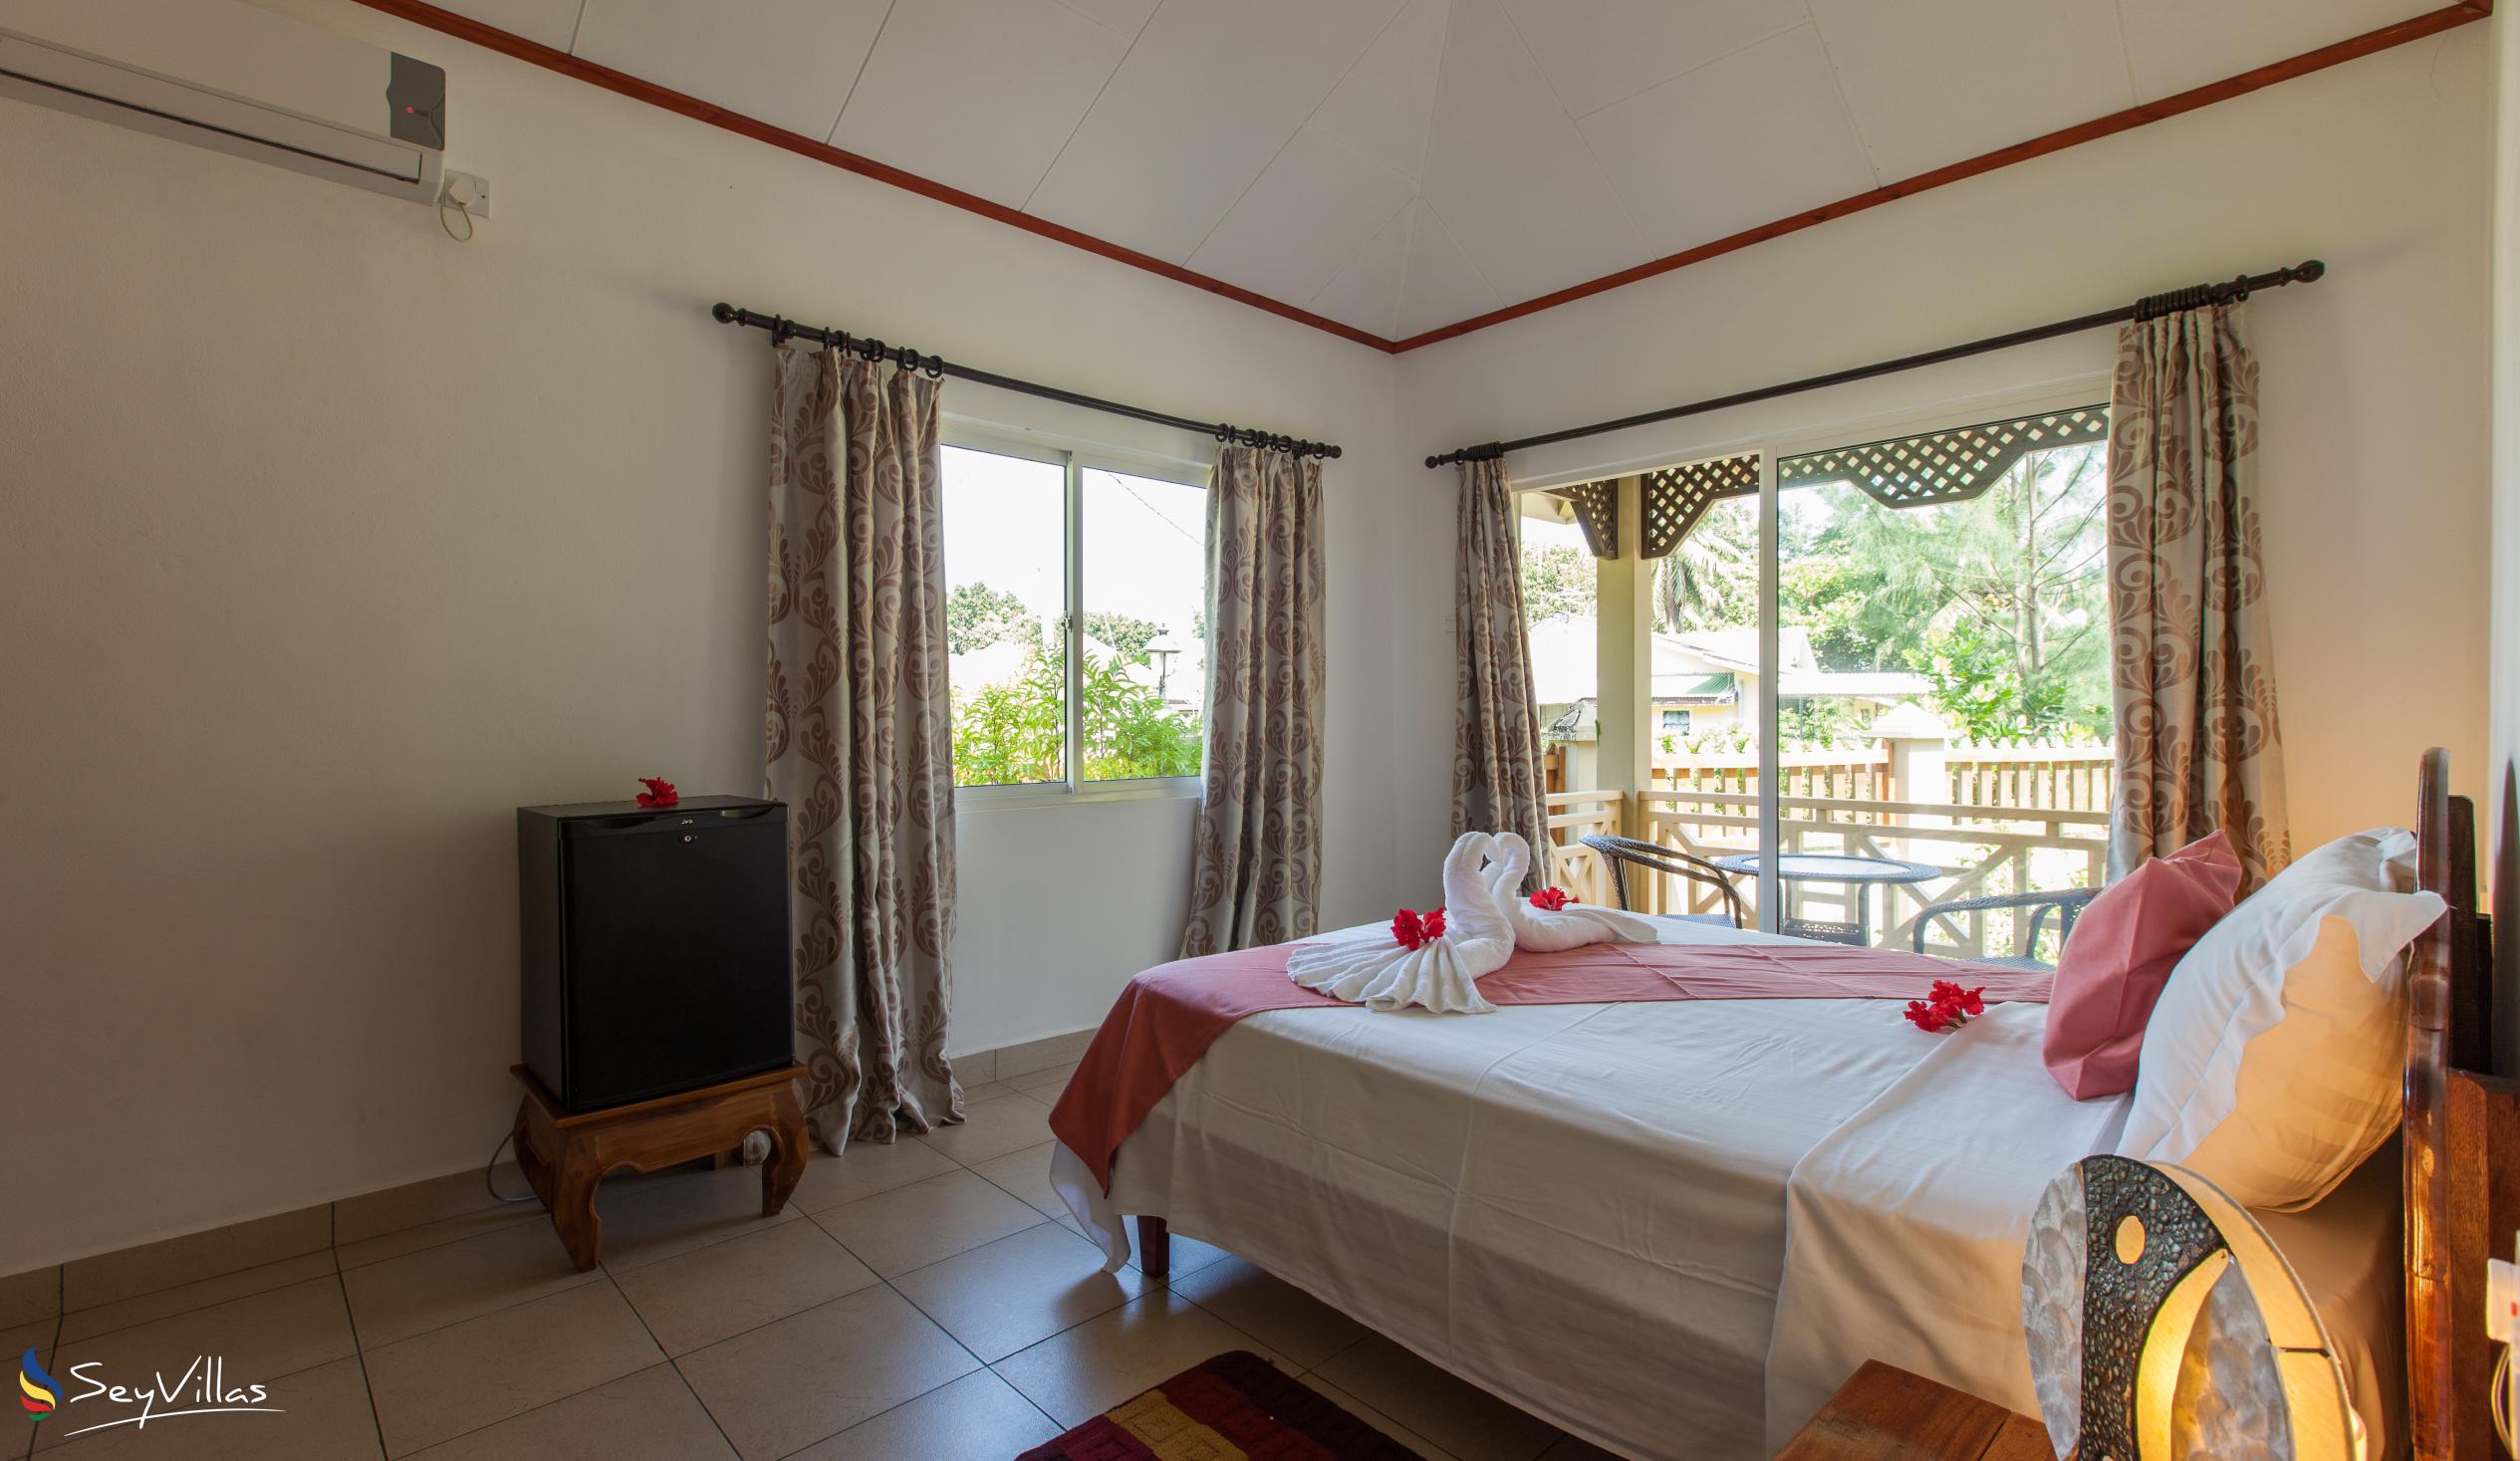 Photo 57: Hostellerie La Digue - 2-Bedroom Chalet - La Digue (Seychelles)